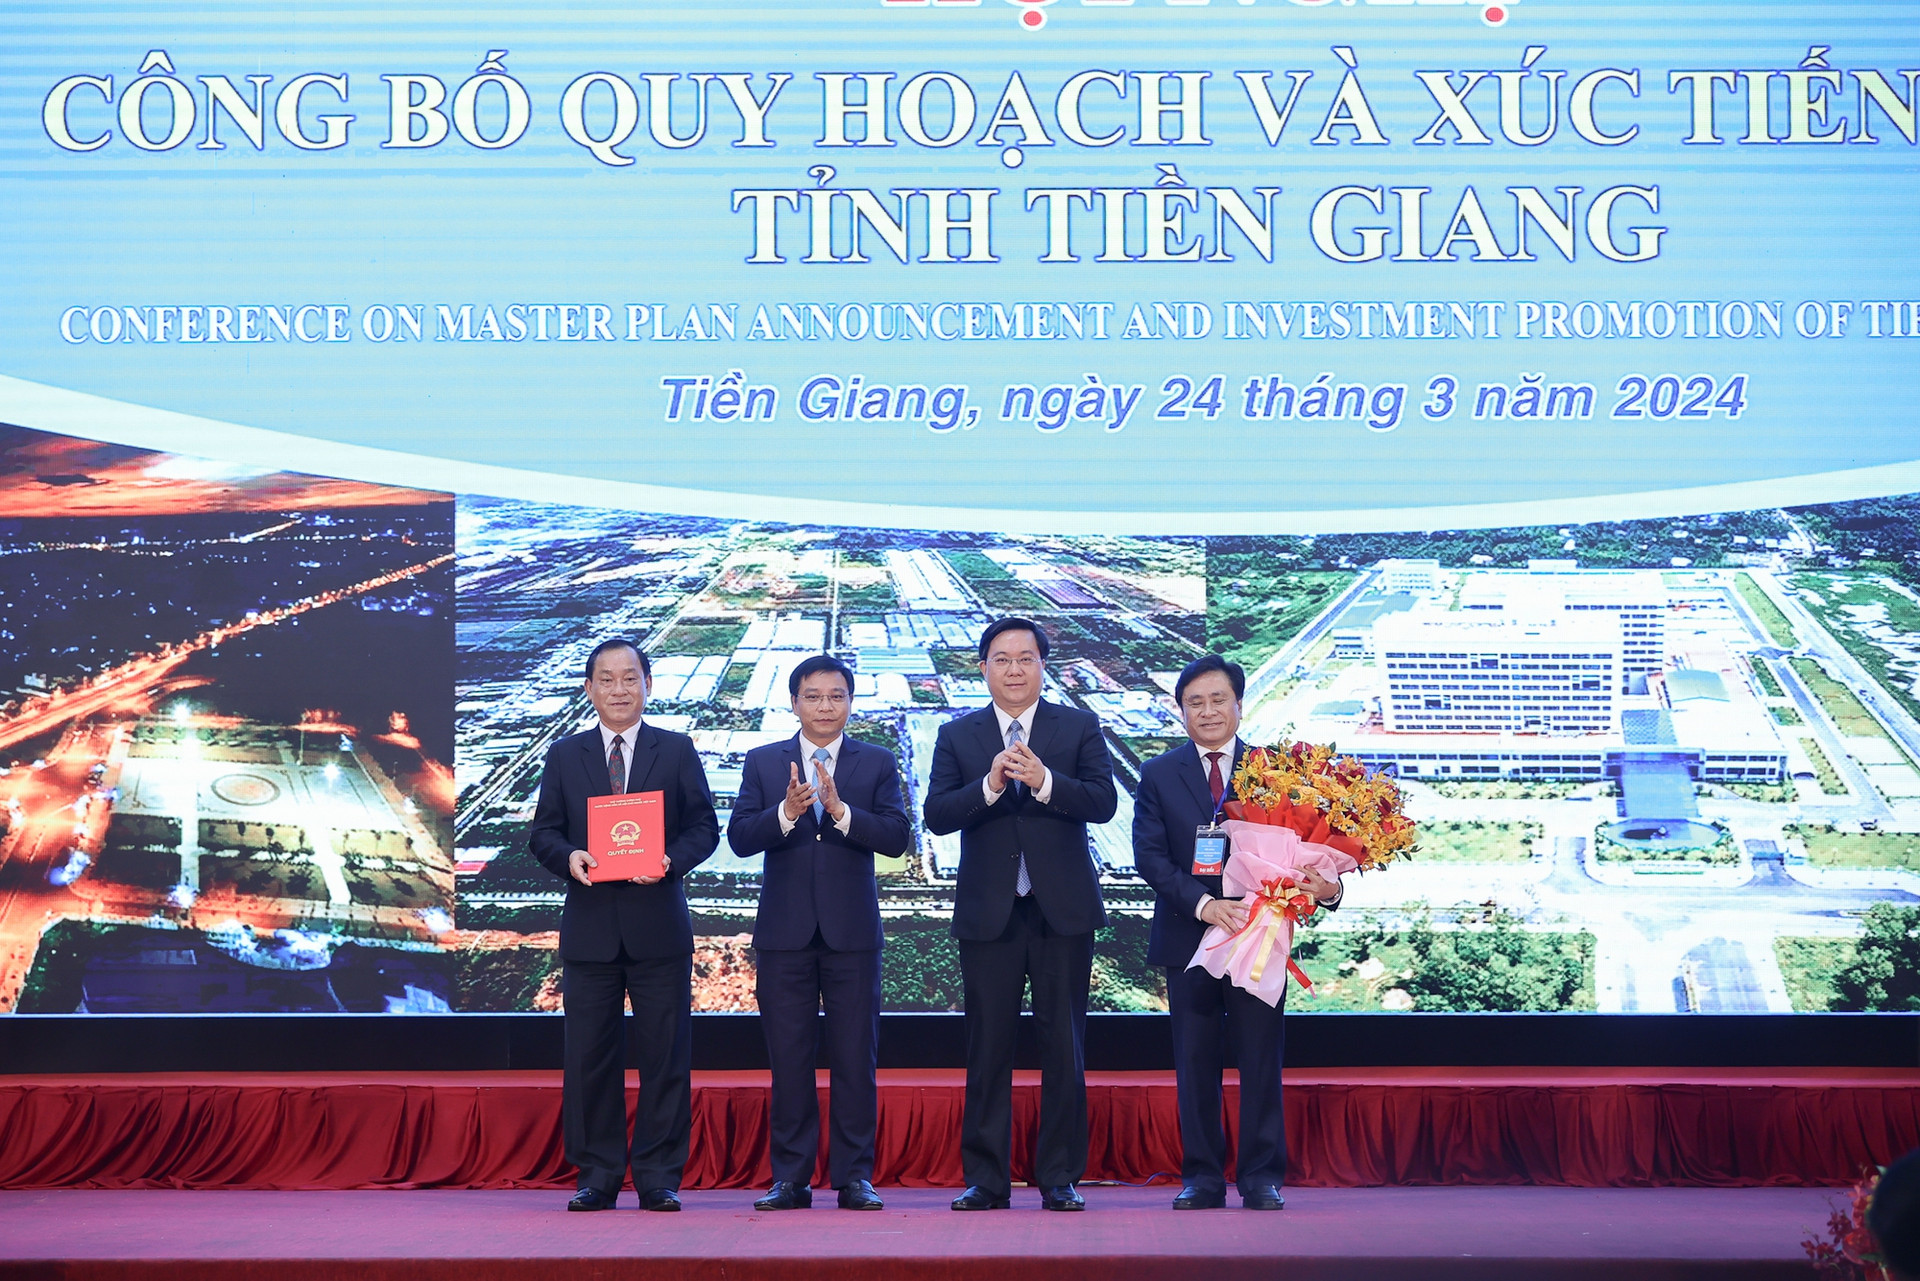 Thủ tướng chỉ rõ '1 trọng tâm, 2 tăng cường, 3 đẩy mạnh' trong thực hiện Quy hoạch tỉnh Tiền Giang- Ảnh 3.